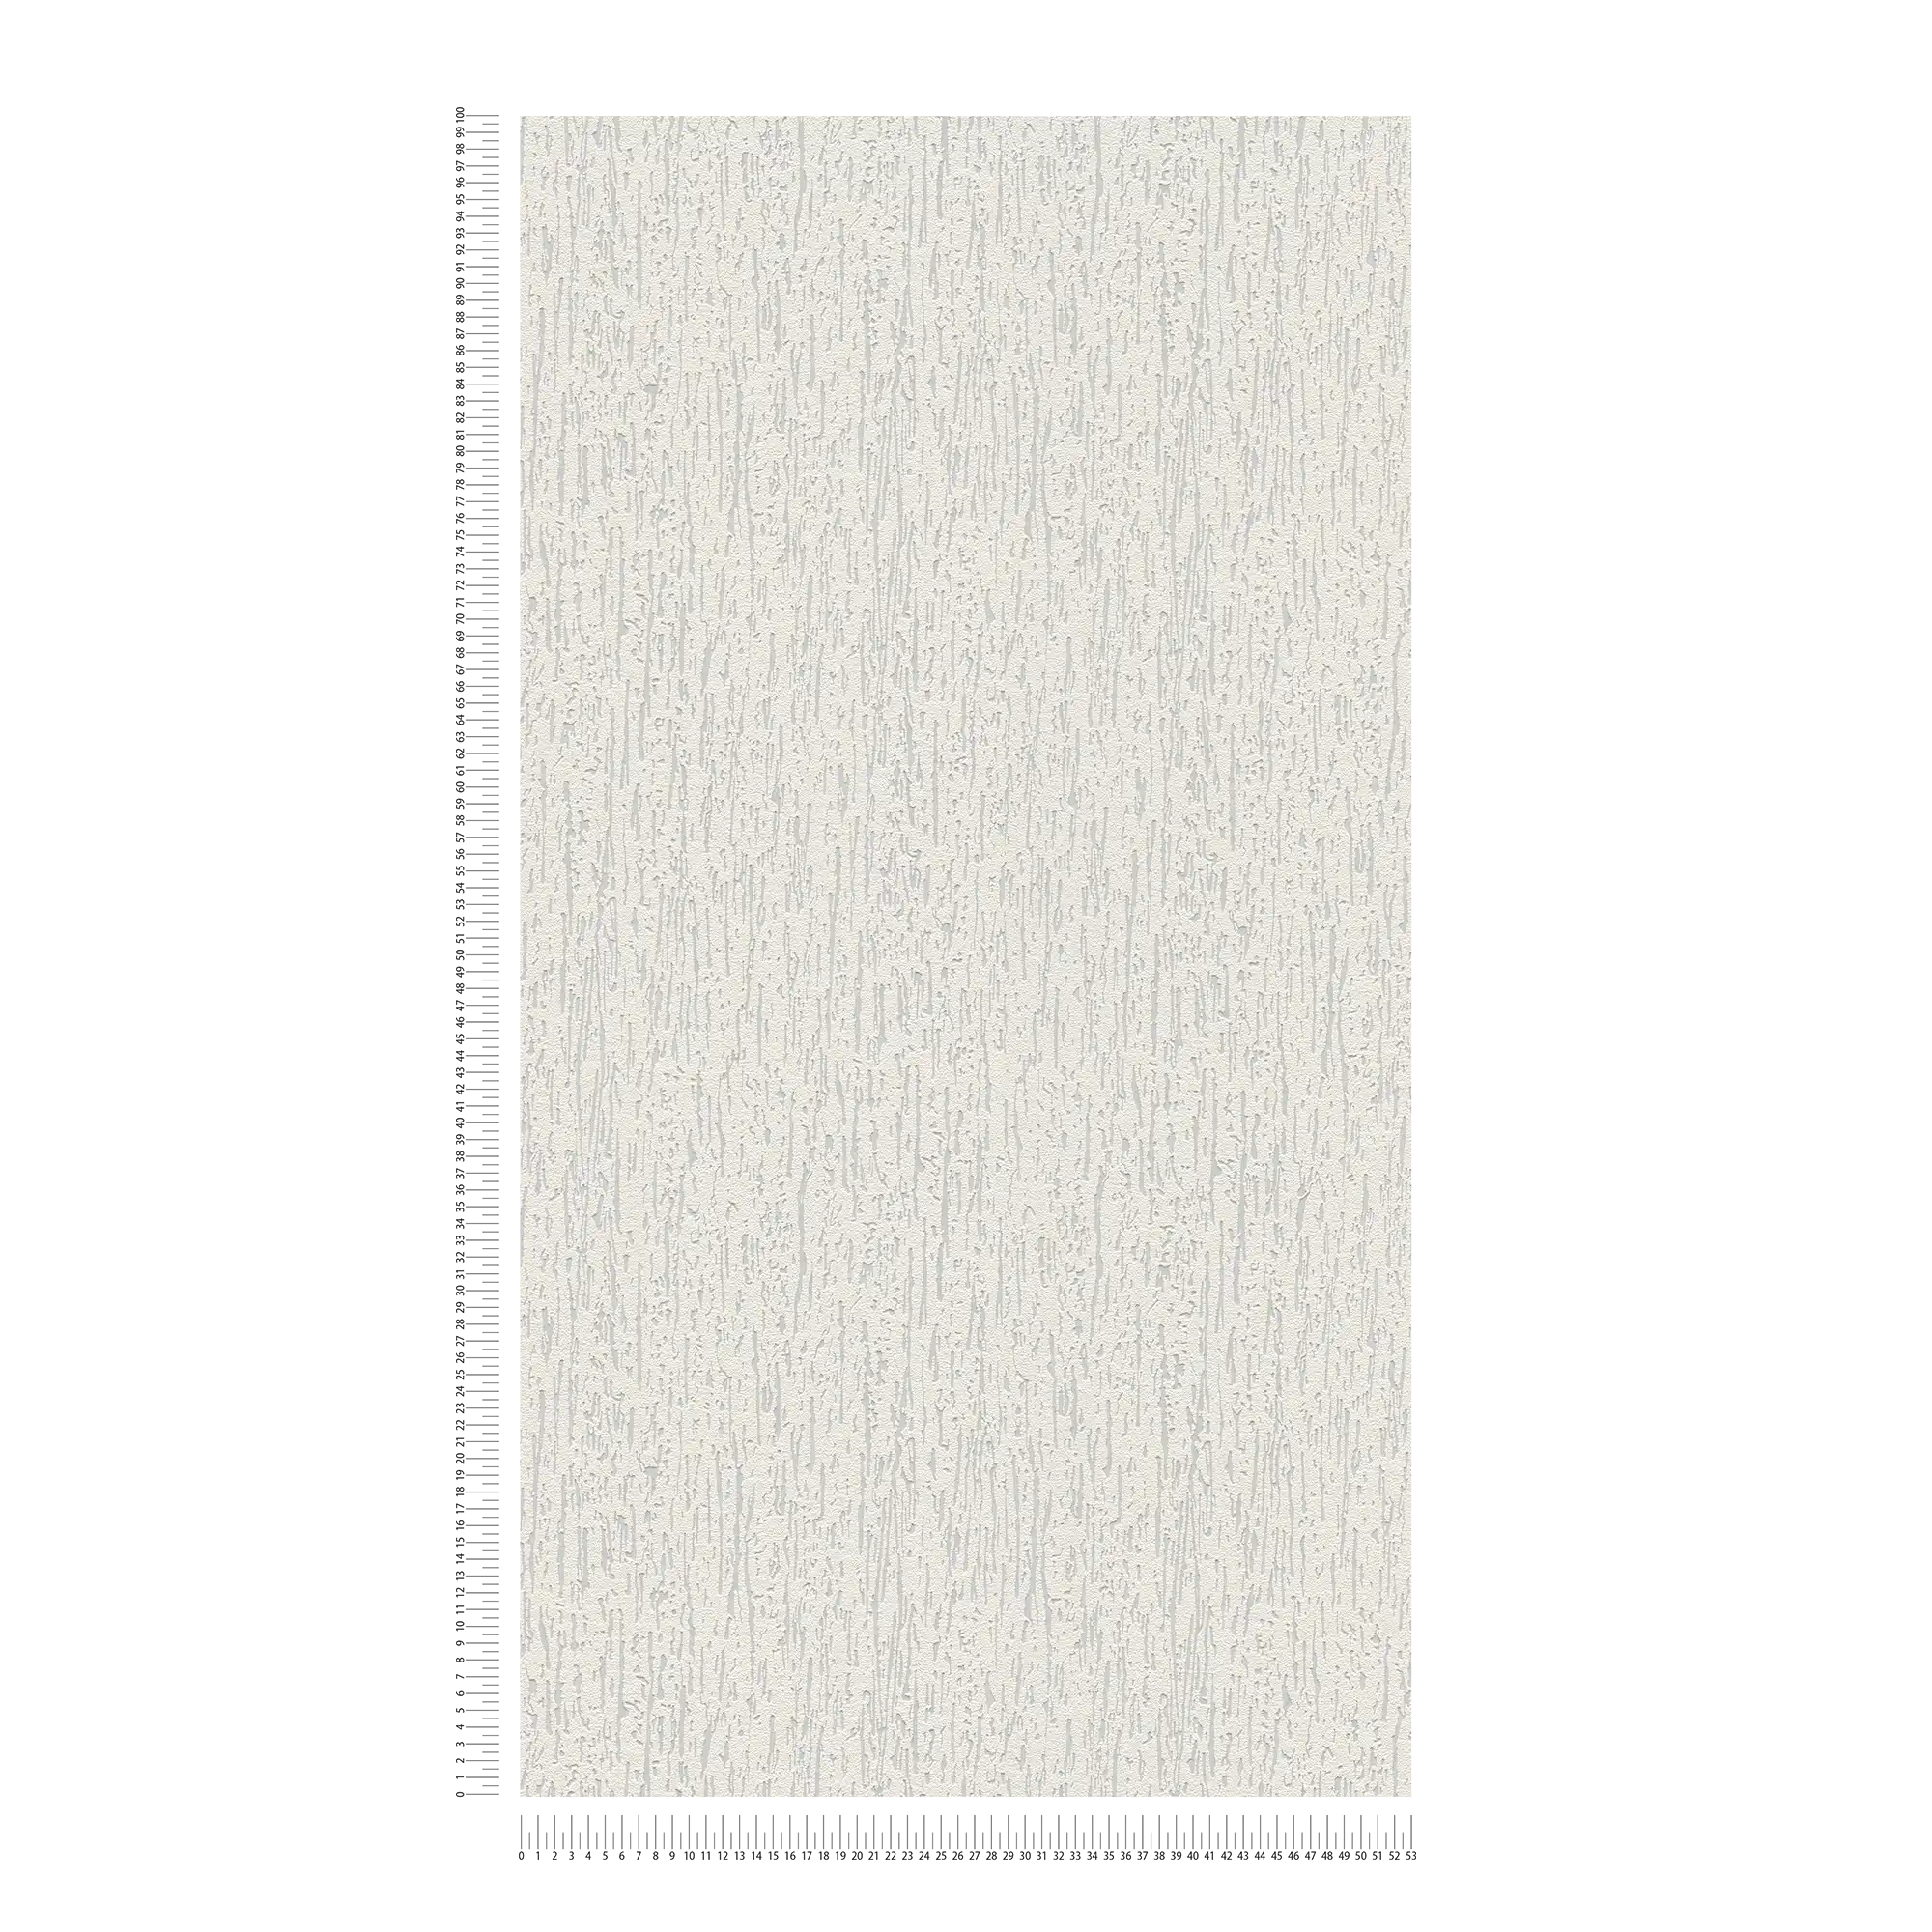             Overschilderbaar vliesbehang in ruwbouwlook - overschilderbaar, wit
        